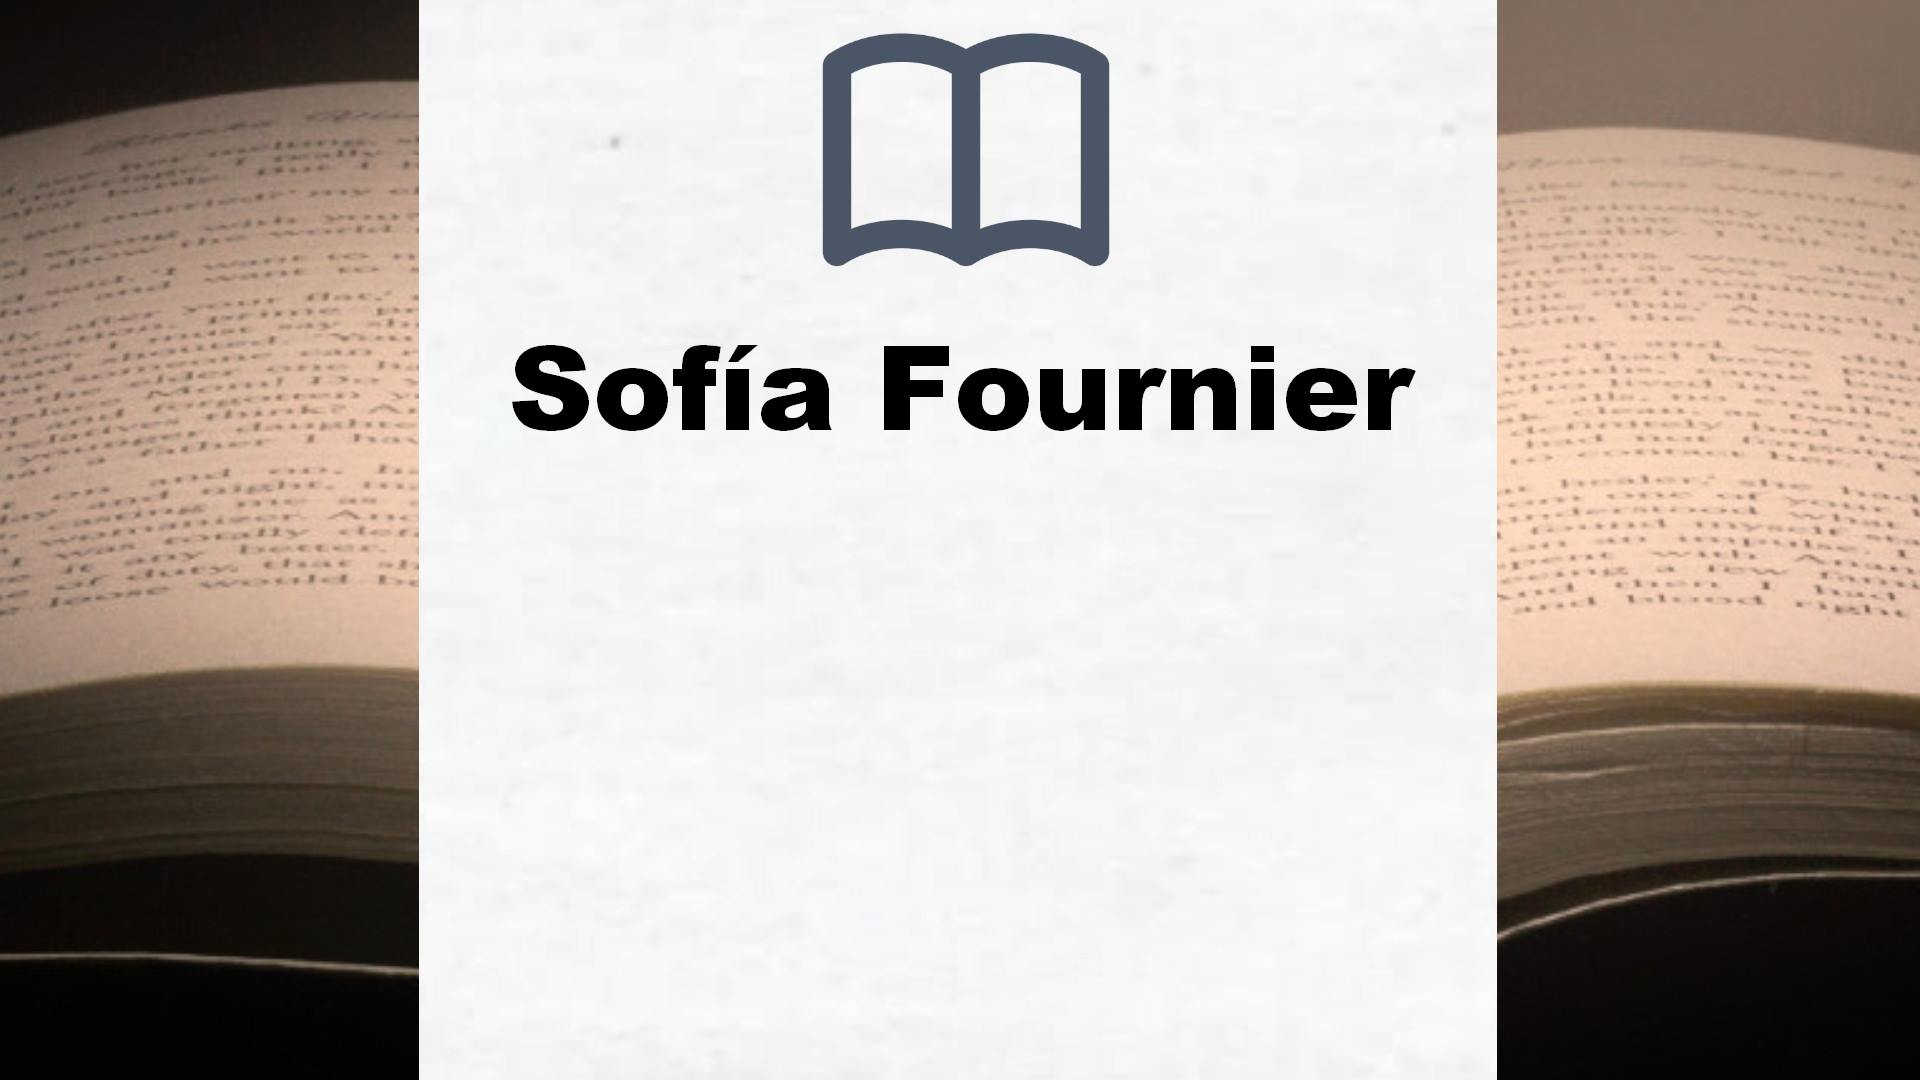 Libros Sofía Fournier